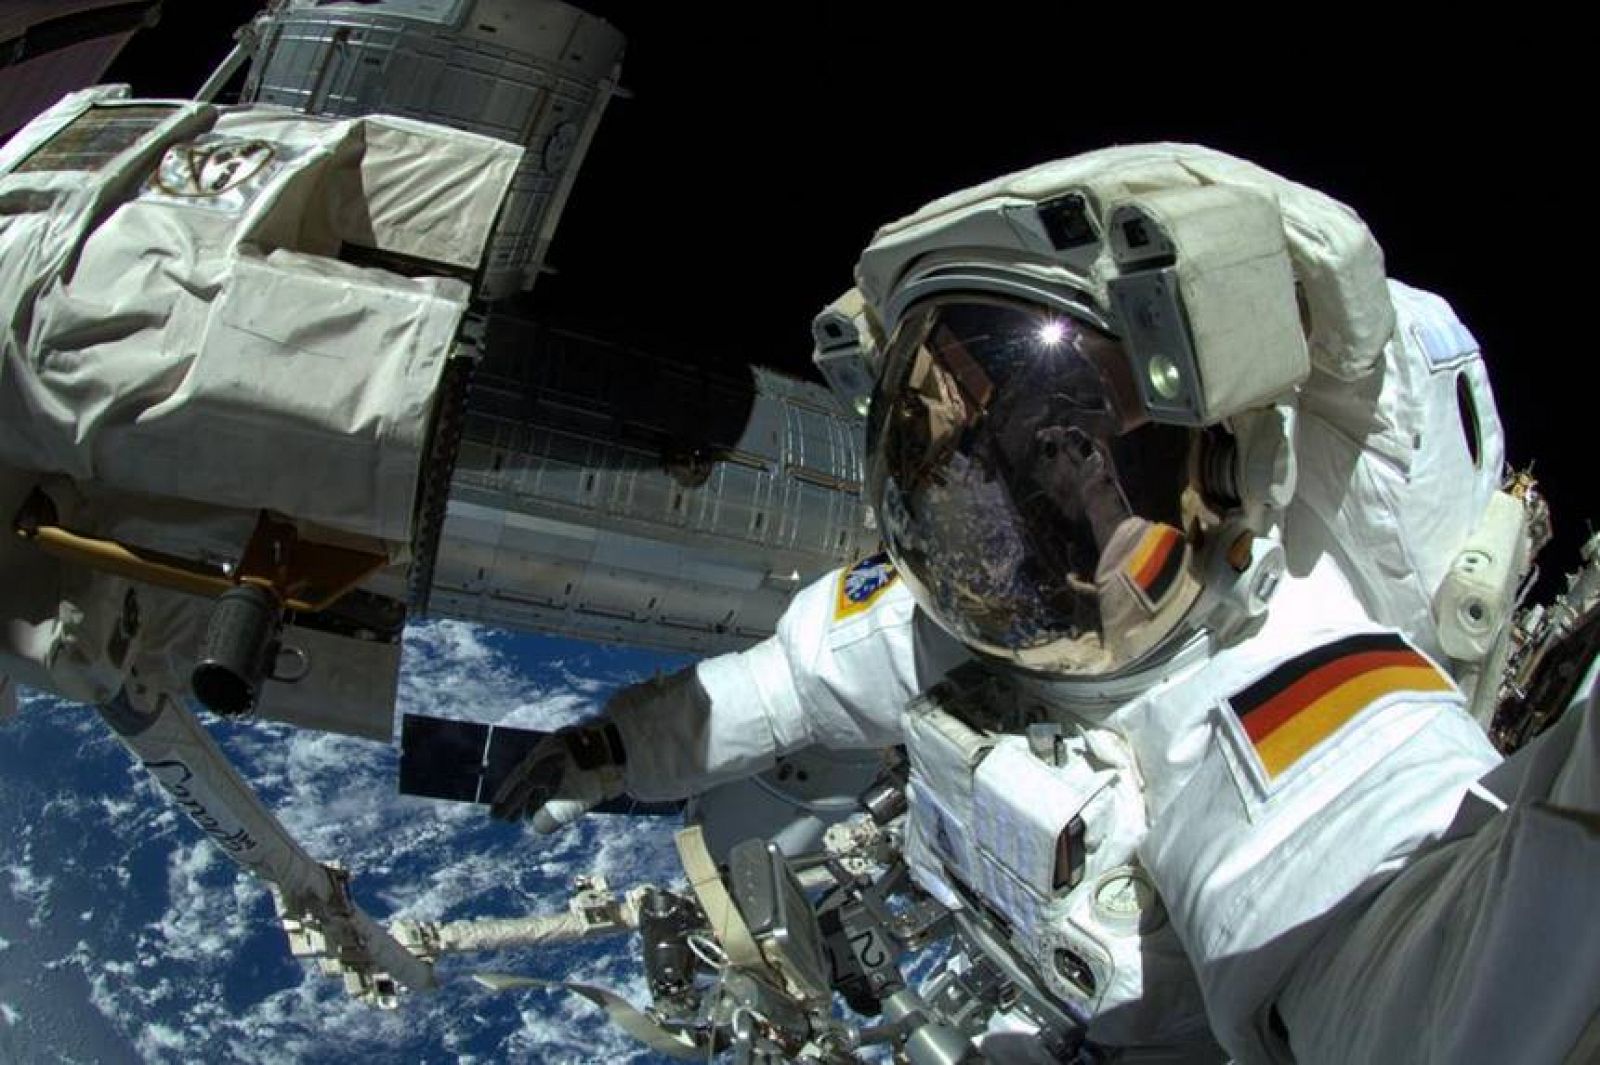 Gerst en la escotilla de la Estación Espacial Internacional